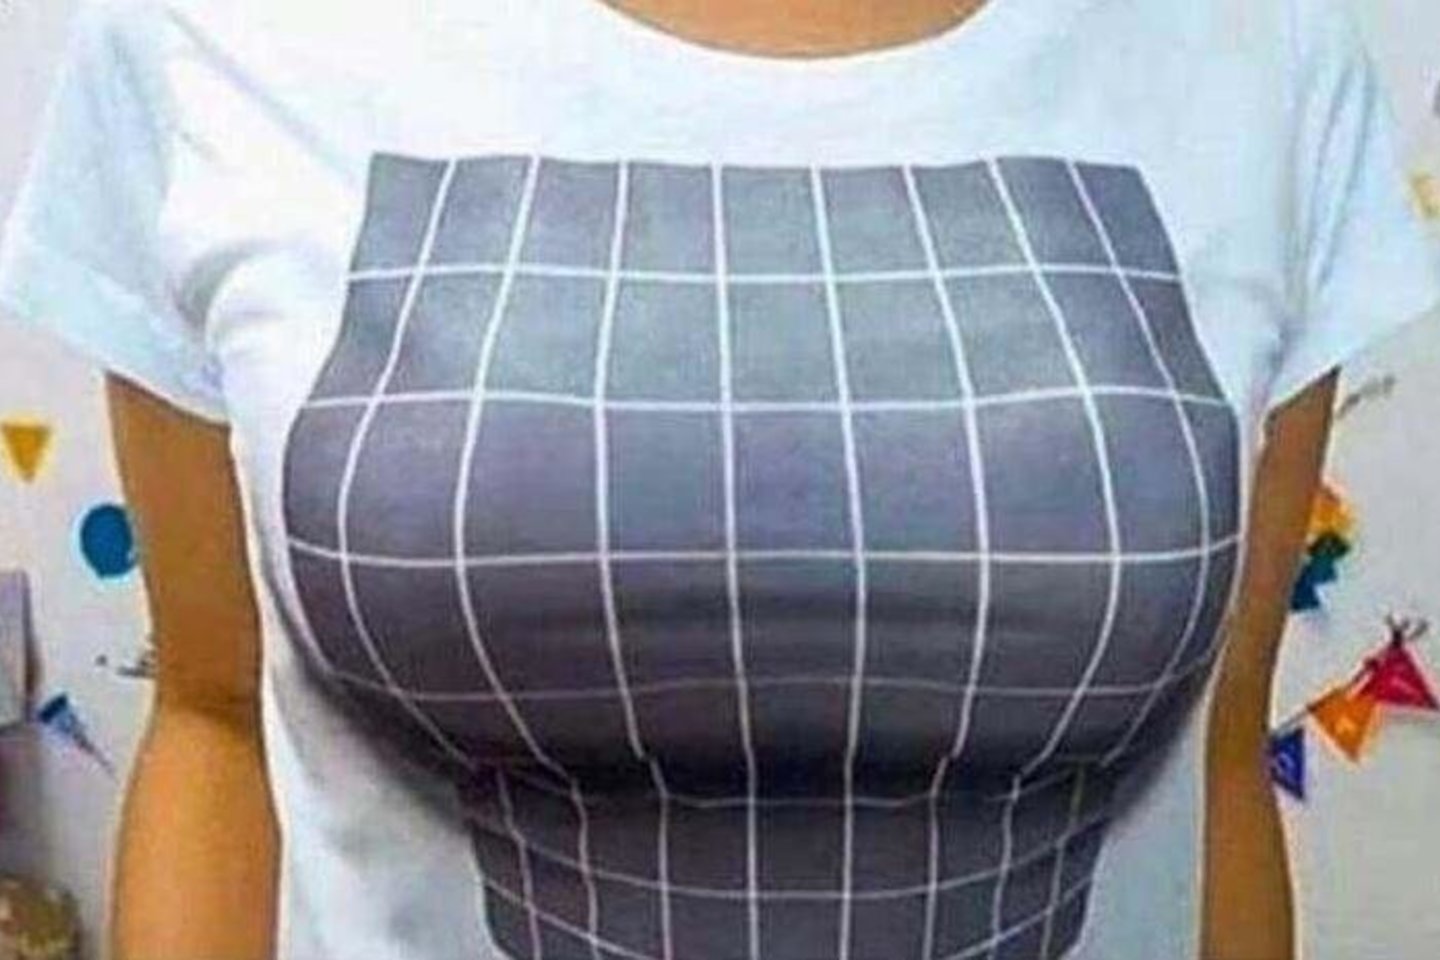  Marškinėliai sukuria didelės krūtinės įspūdį.